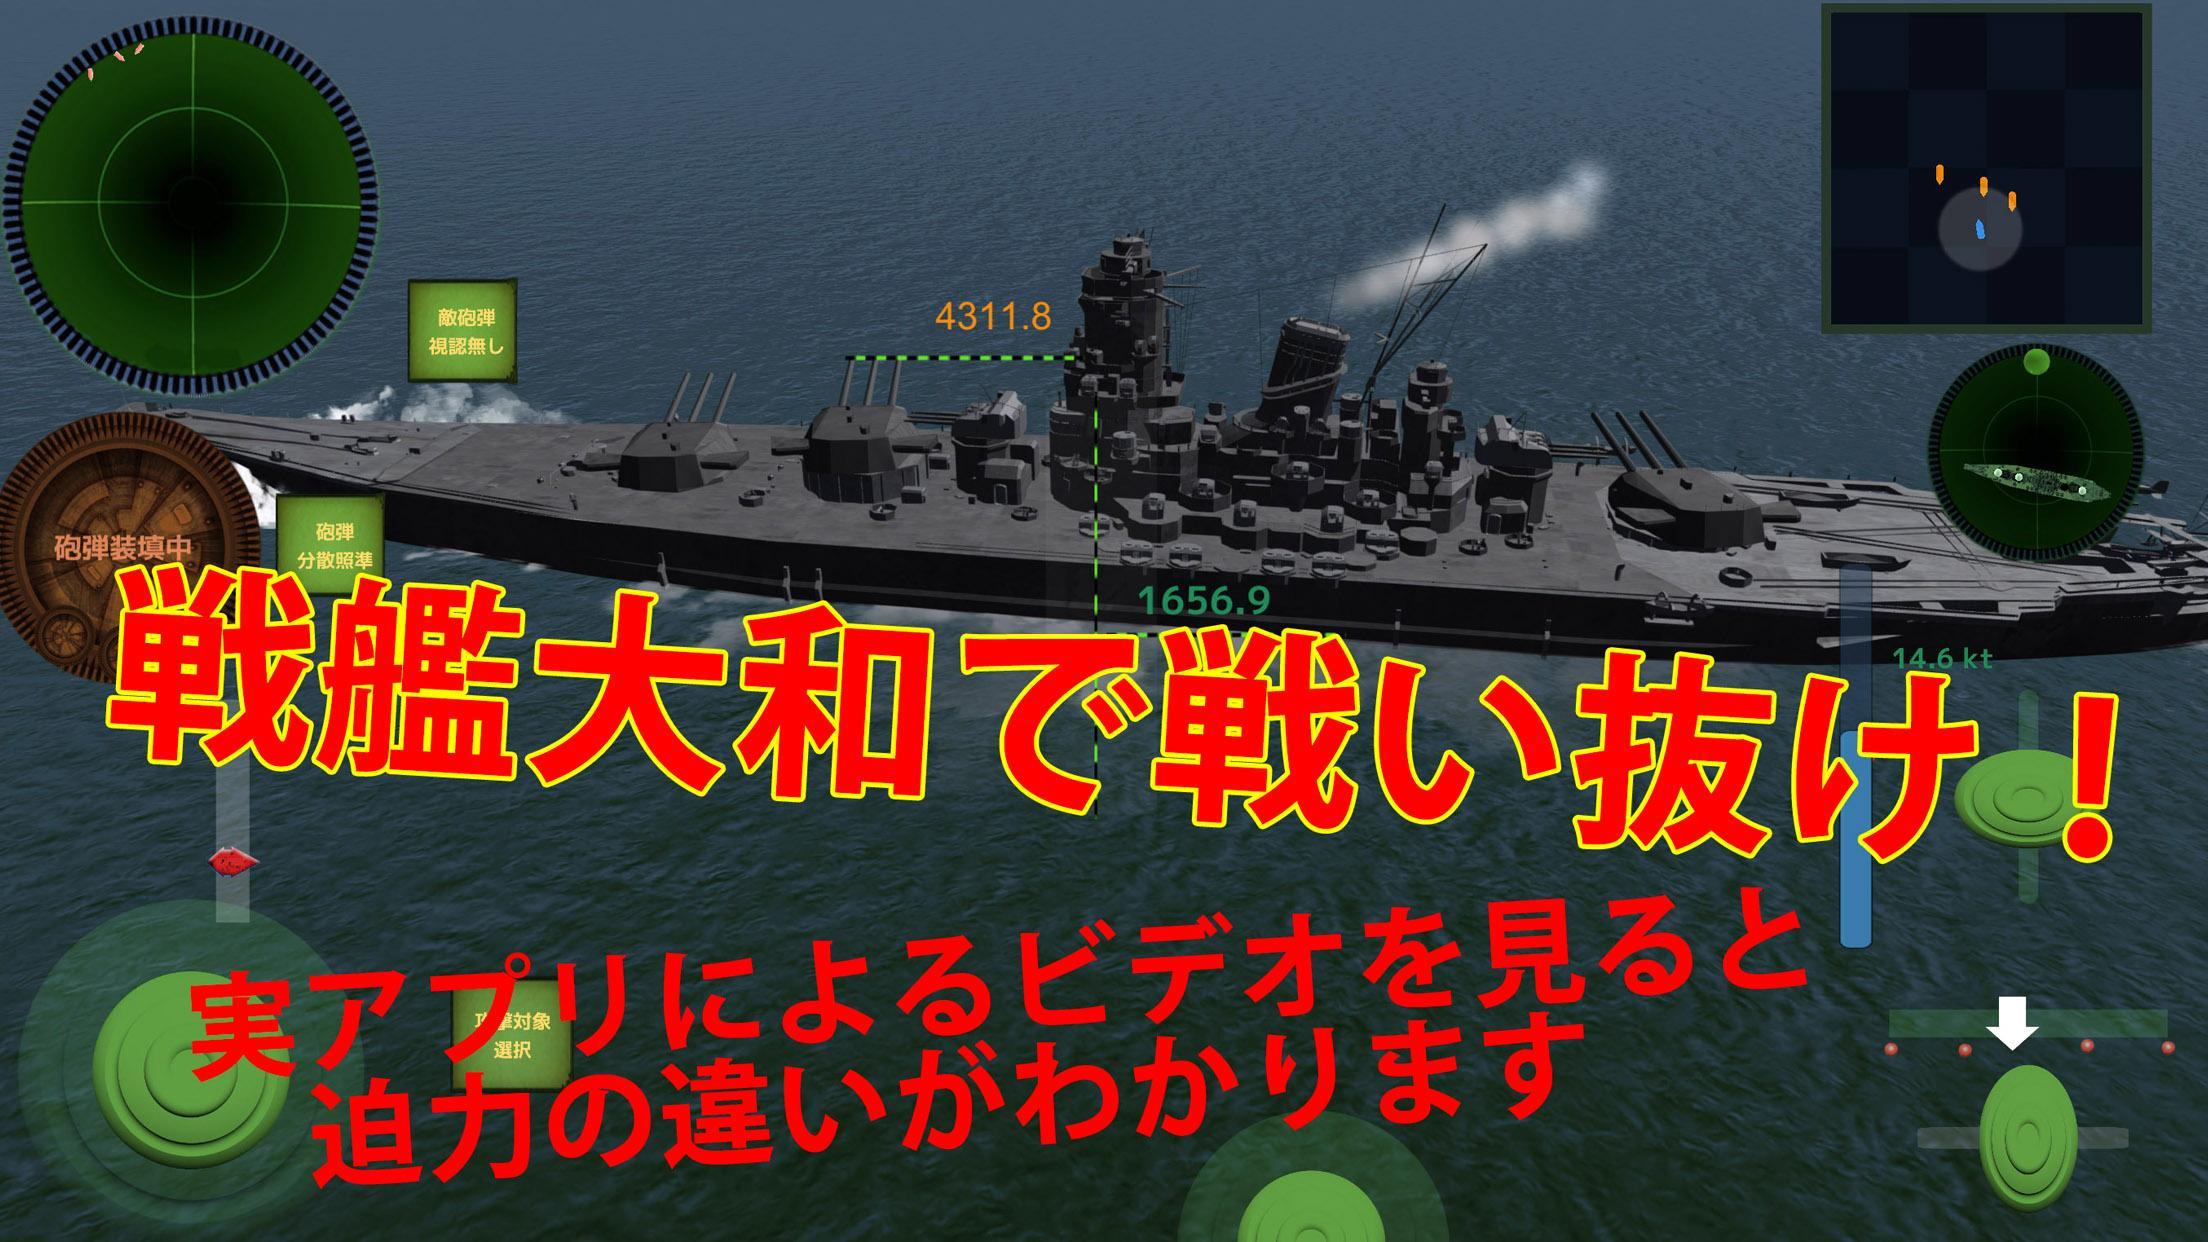 Screenshot 1 of Battleship-Ace Battle - Дестро 